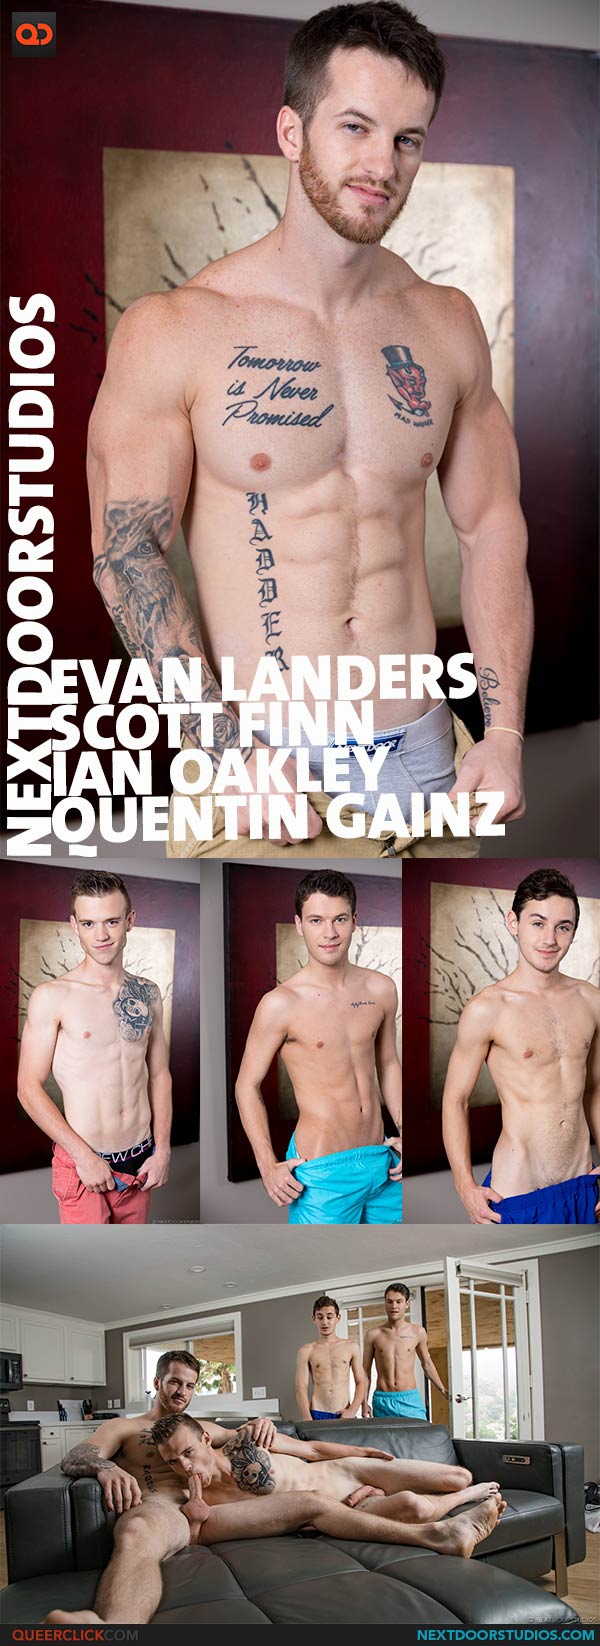 Next Door Studios:  Quentin Gainz, Scott Finn, Evan Landers and Ian Oakley